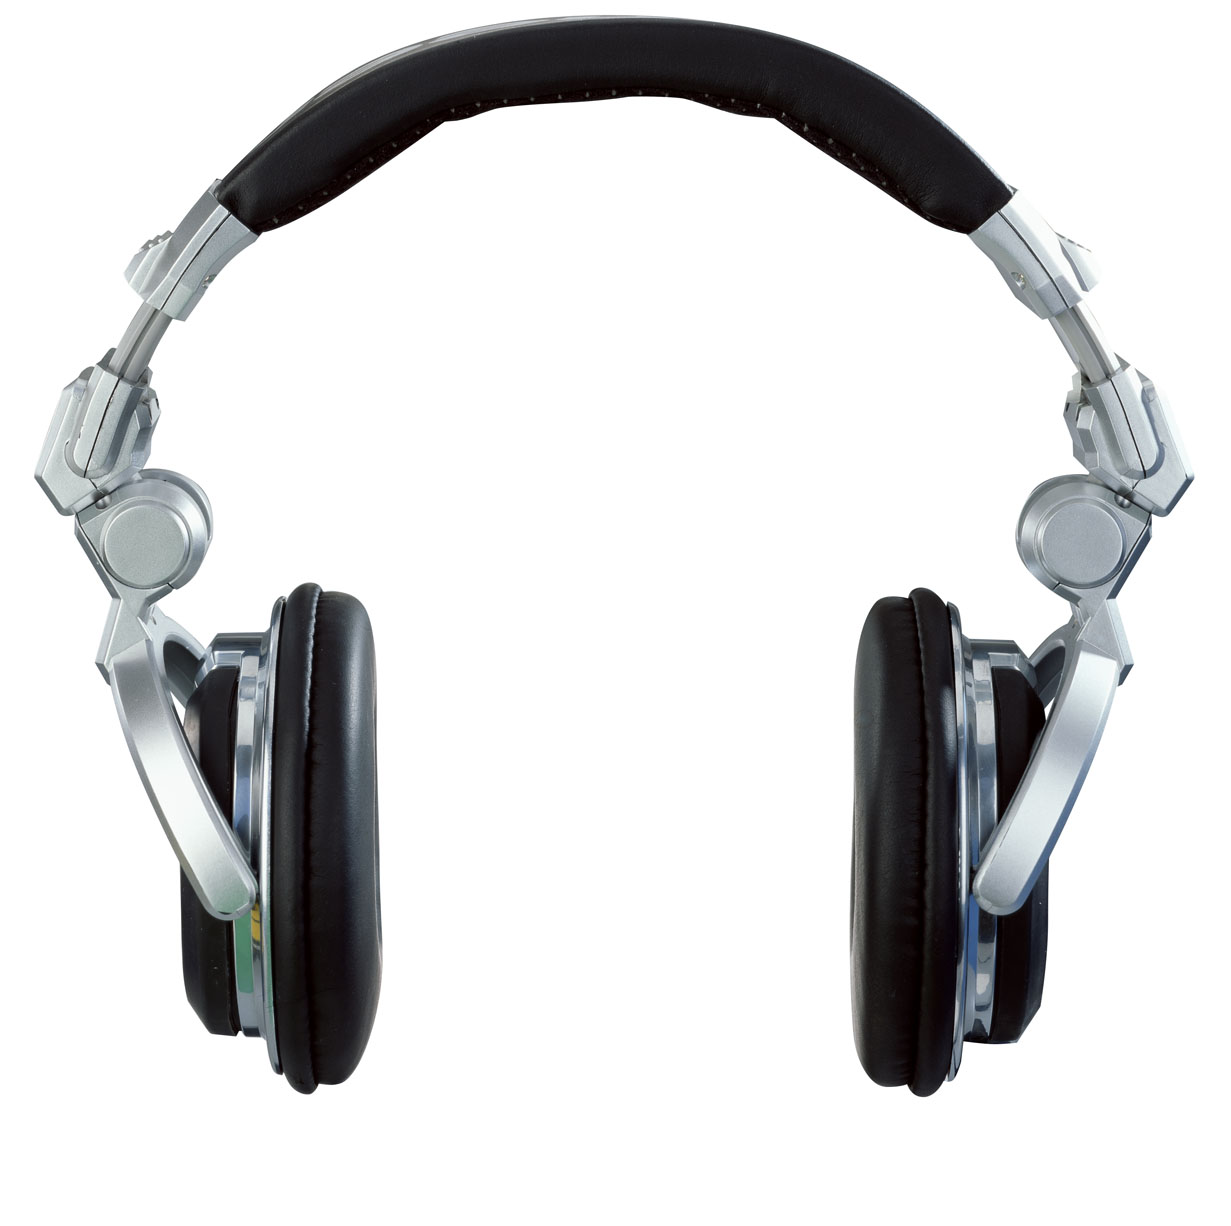 headphones wallpaper,headphones,gadget,audio equipment,headset,technology